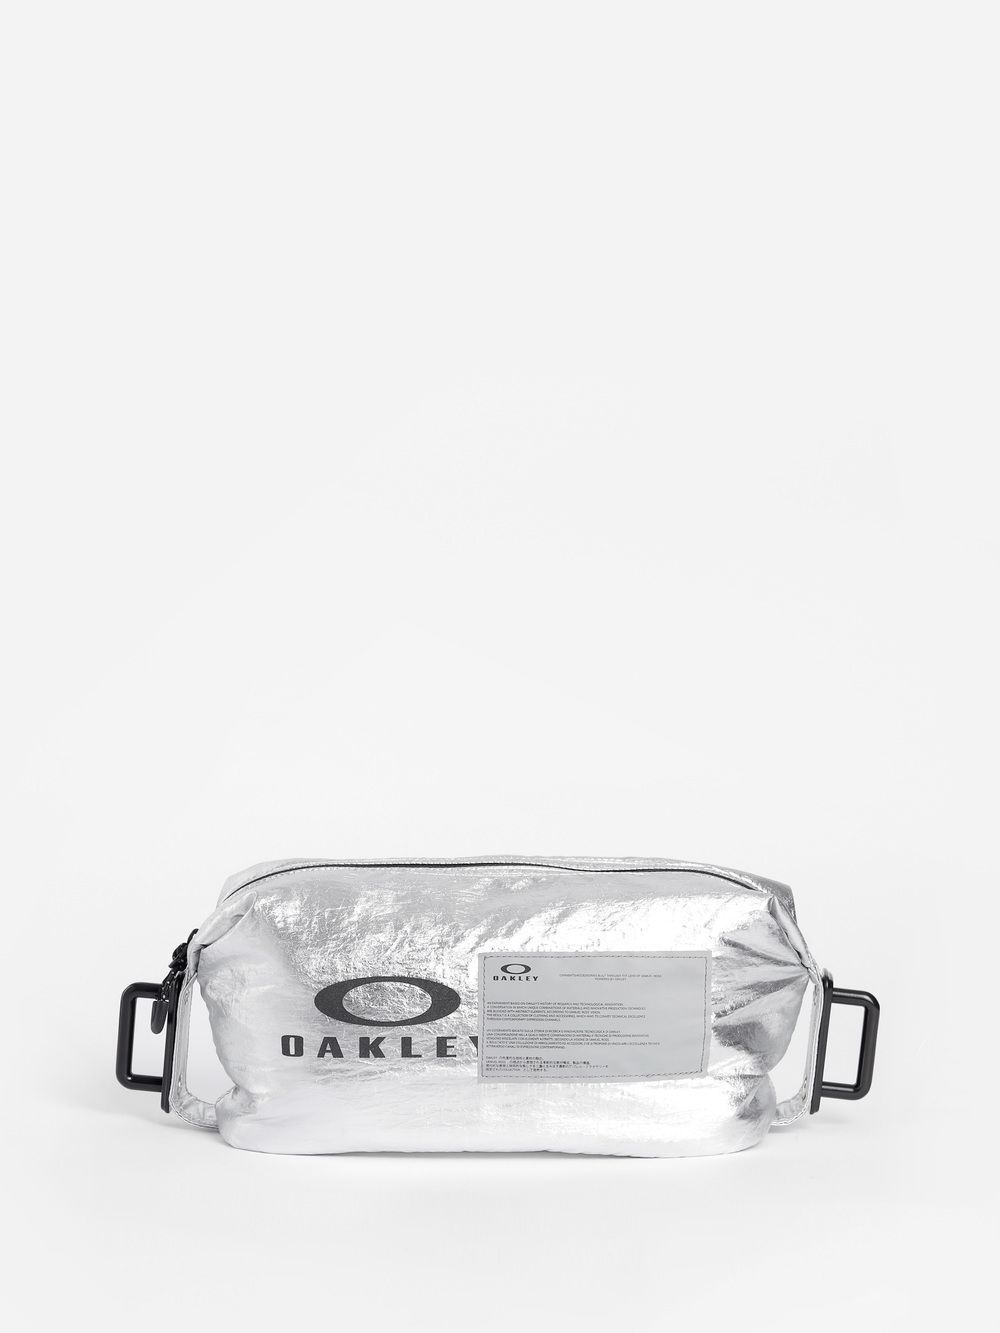 Oakley by Samuel Ross FW18 | Streetwear of tomorrow - HIGHXTAR.